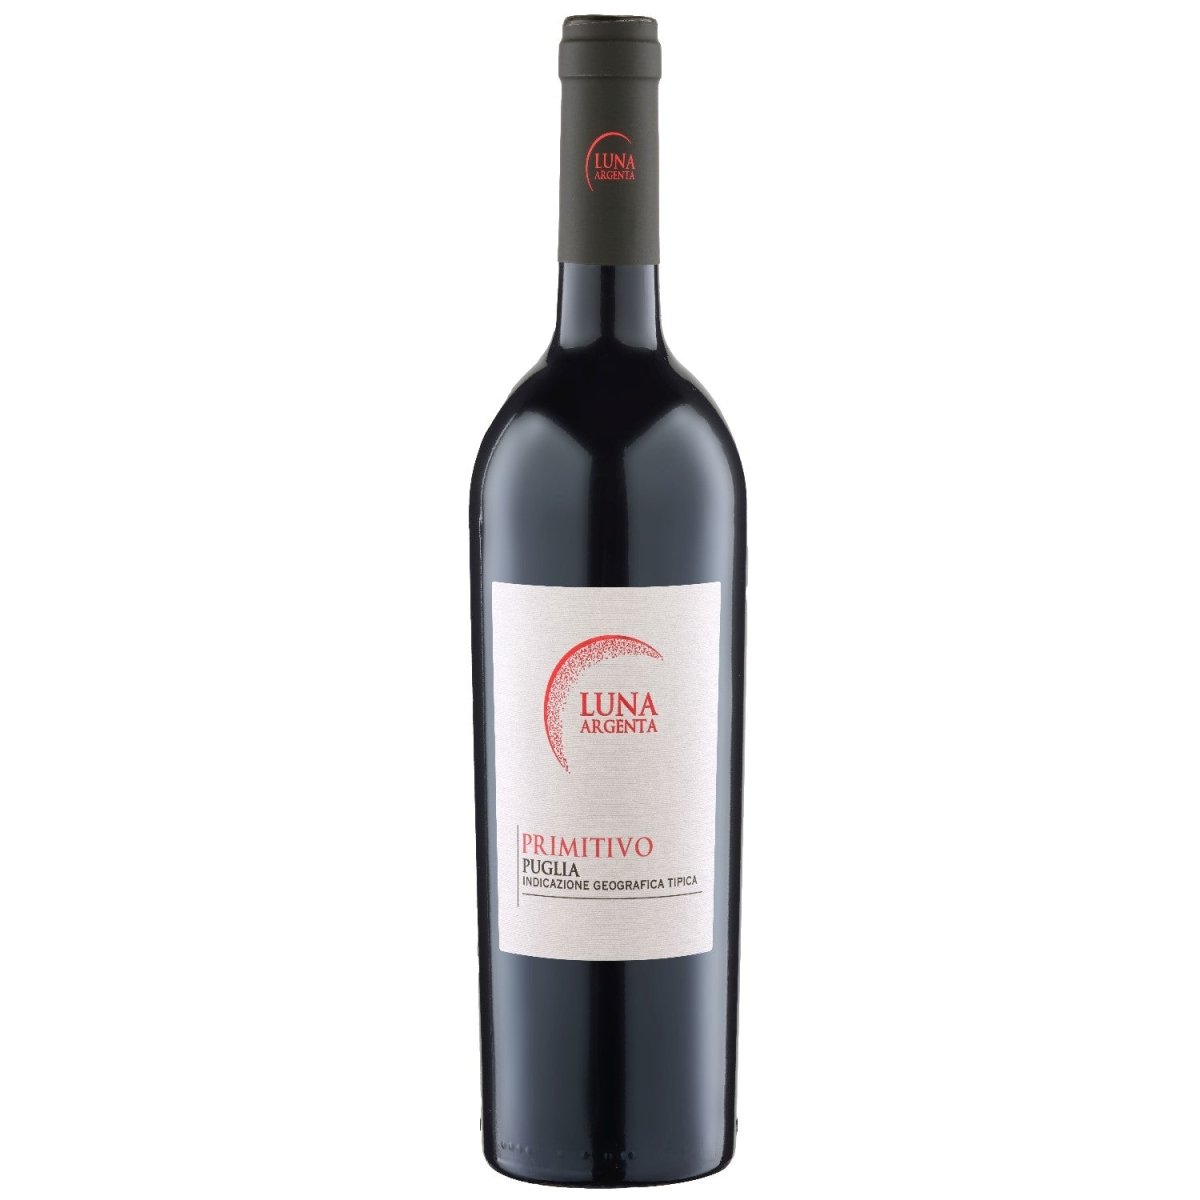 Luna Argenta Primitivo Puglia IGT Rotwein Wein halbtrocken Italien (12 x 0.75l) - Versanel -